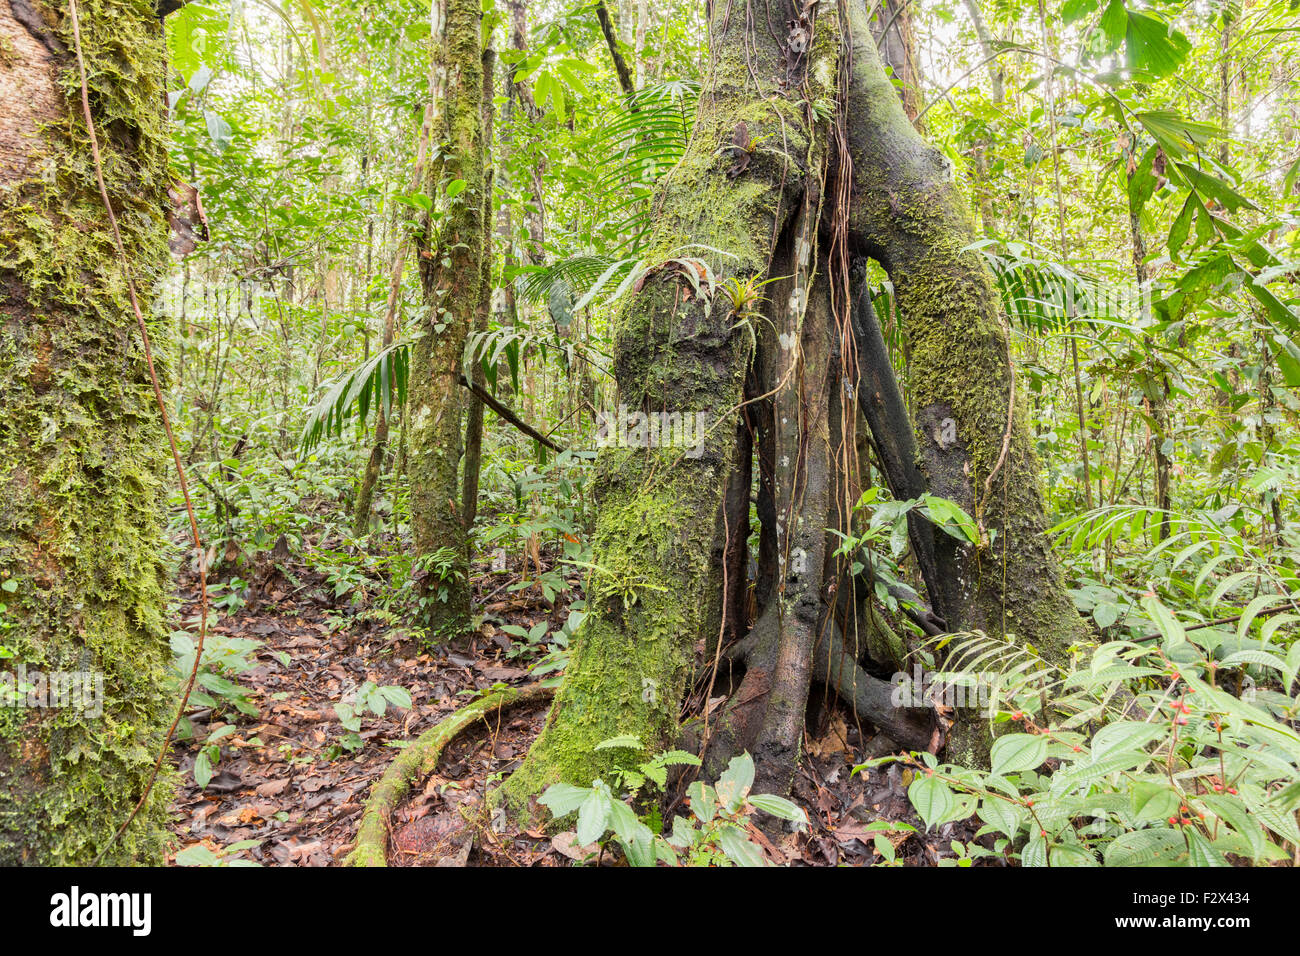 Árbol con raíces aéreas en la Amazonia ecuatoriana. Imagen HDR. Foto de stock